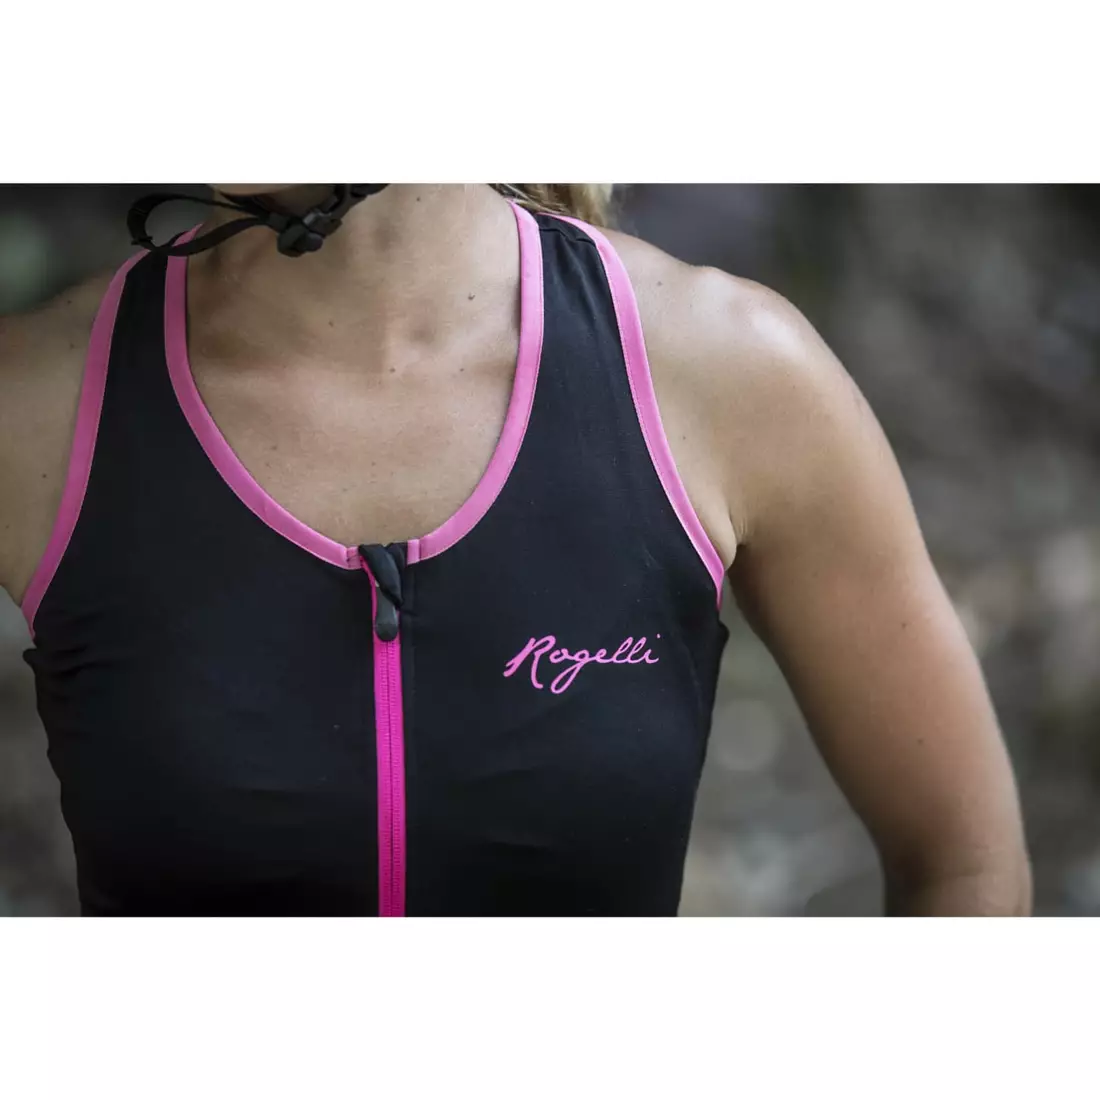 ROGELLI ABBEY - damska koszulka rowerowa bez rękawków - kolor: Czarno-różowy